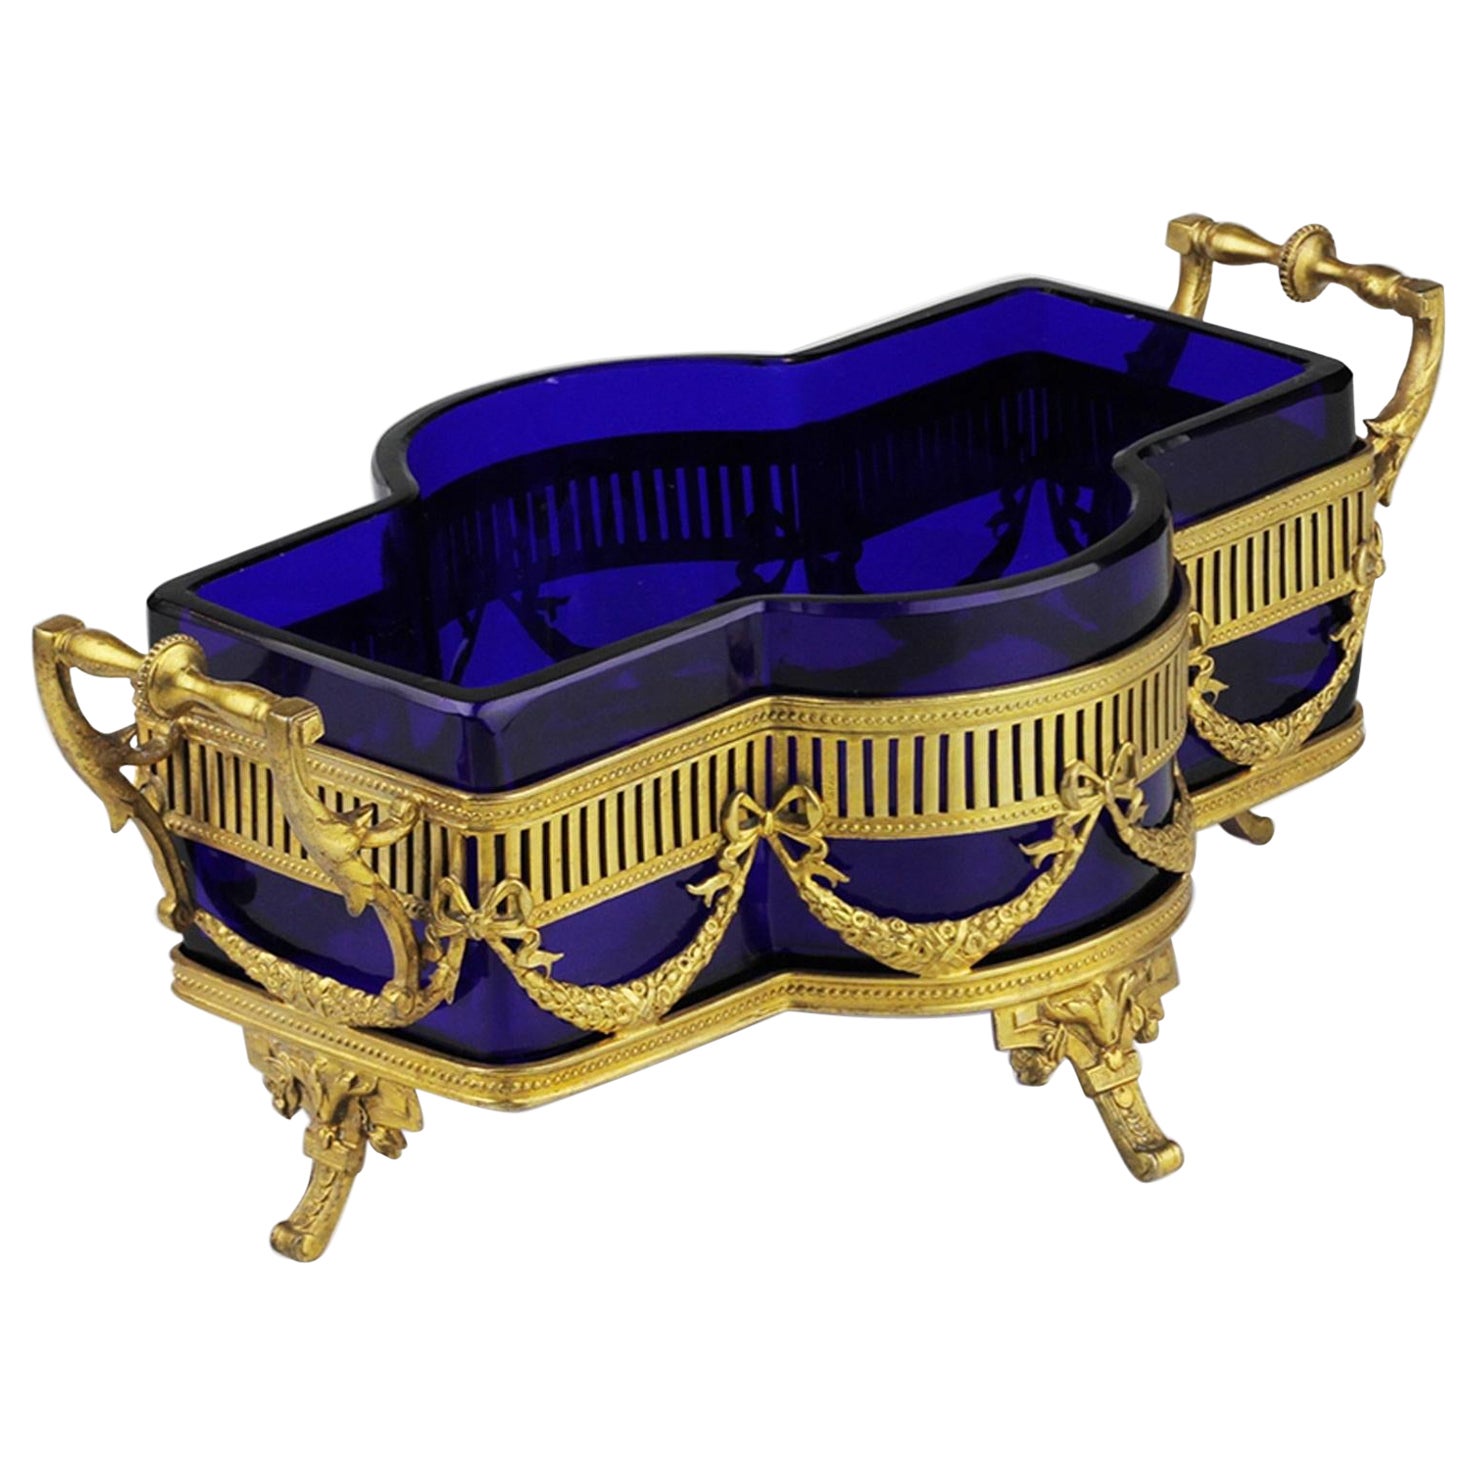 Centrotavola in argento dorato e vetro cobalto in stile tardo vittoriano, neoclassico